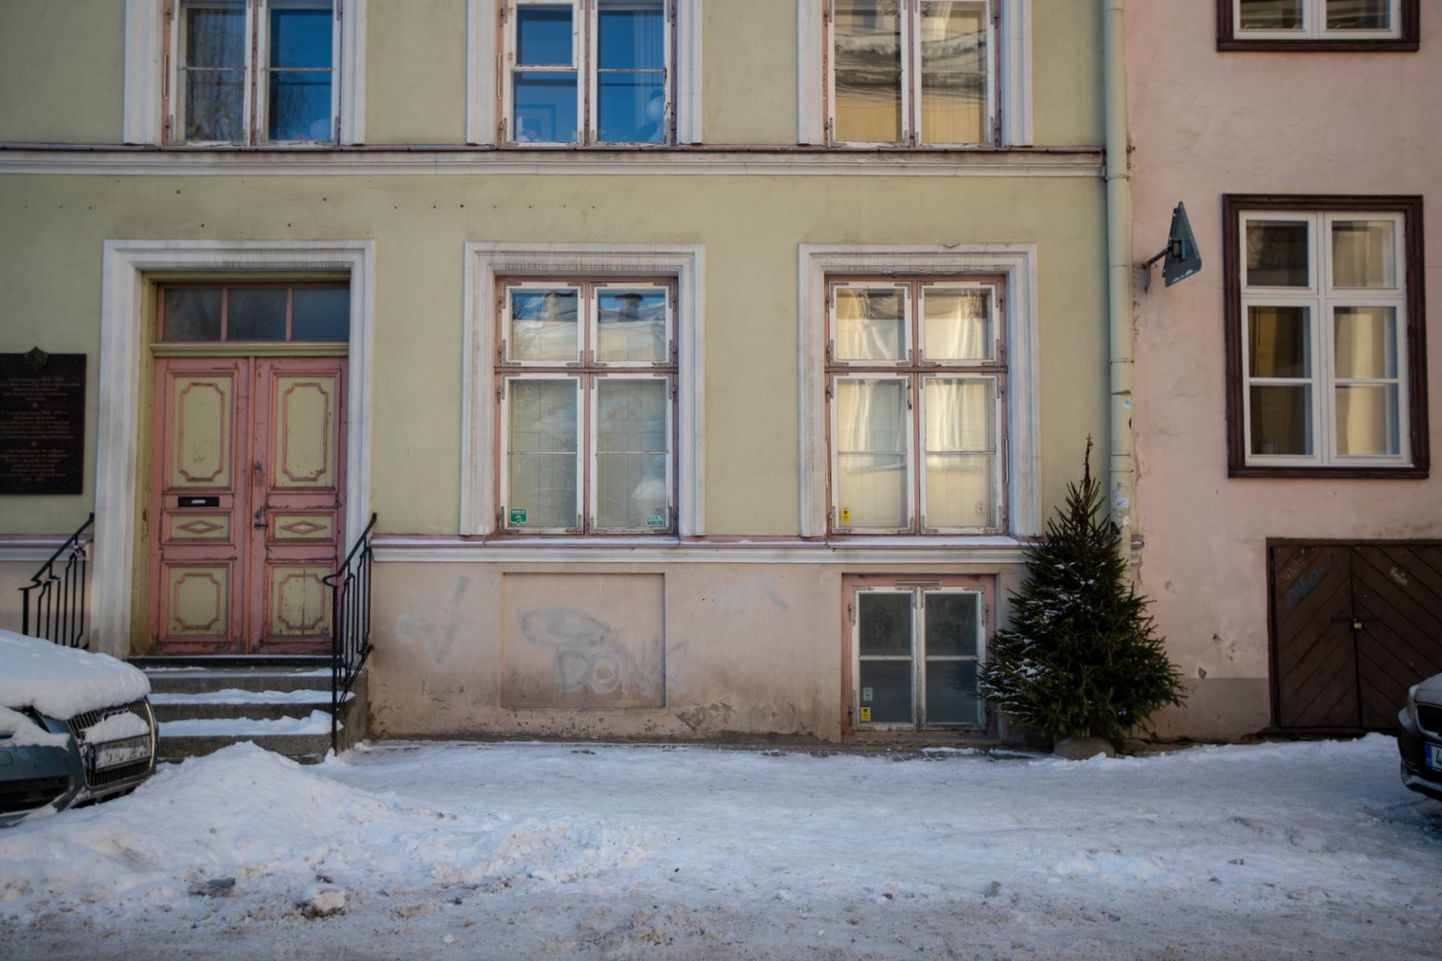 Vene tänav 19 korteri omanik on naabri peale kuri.